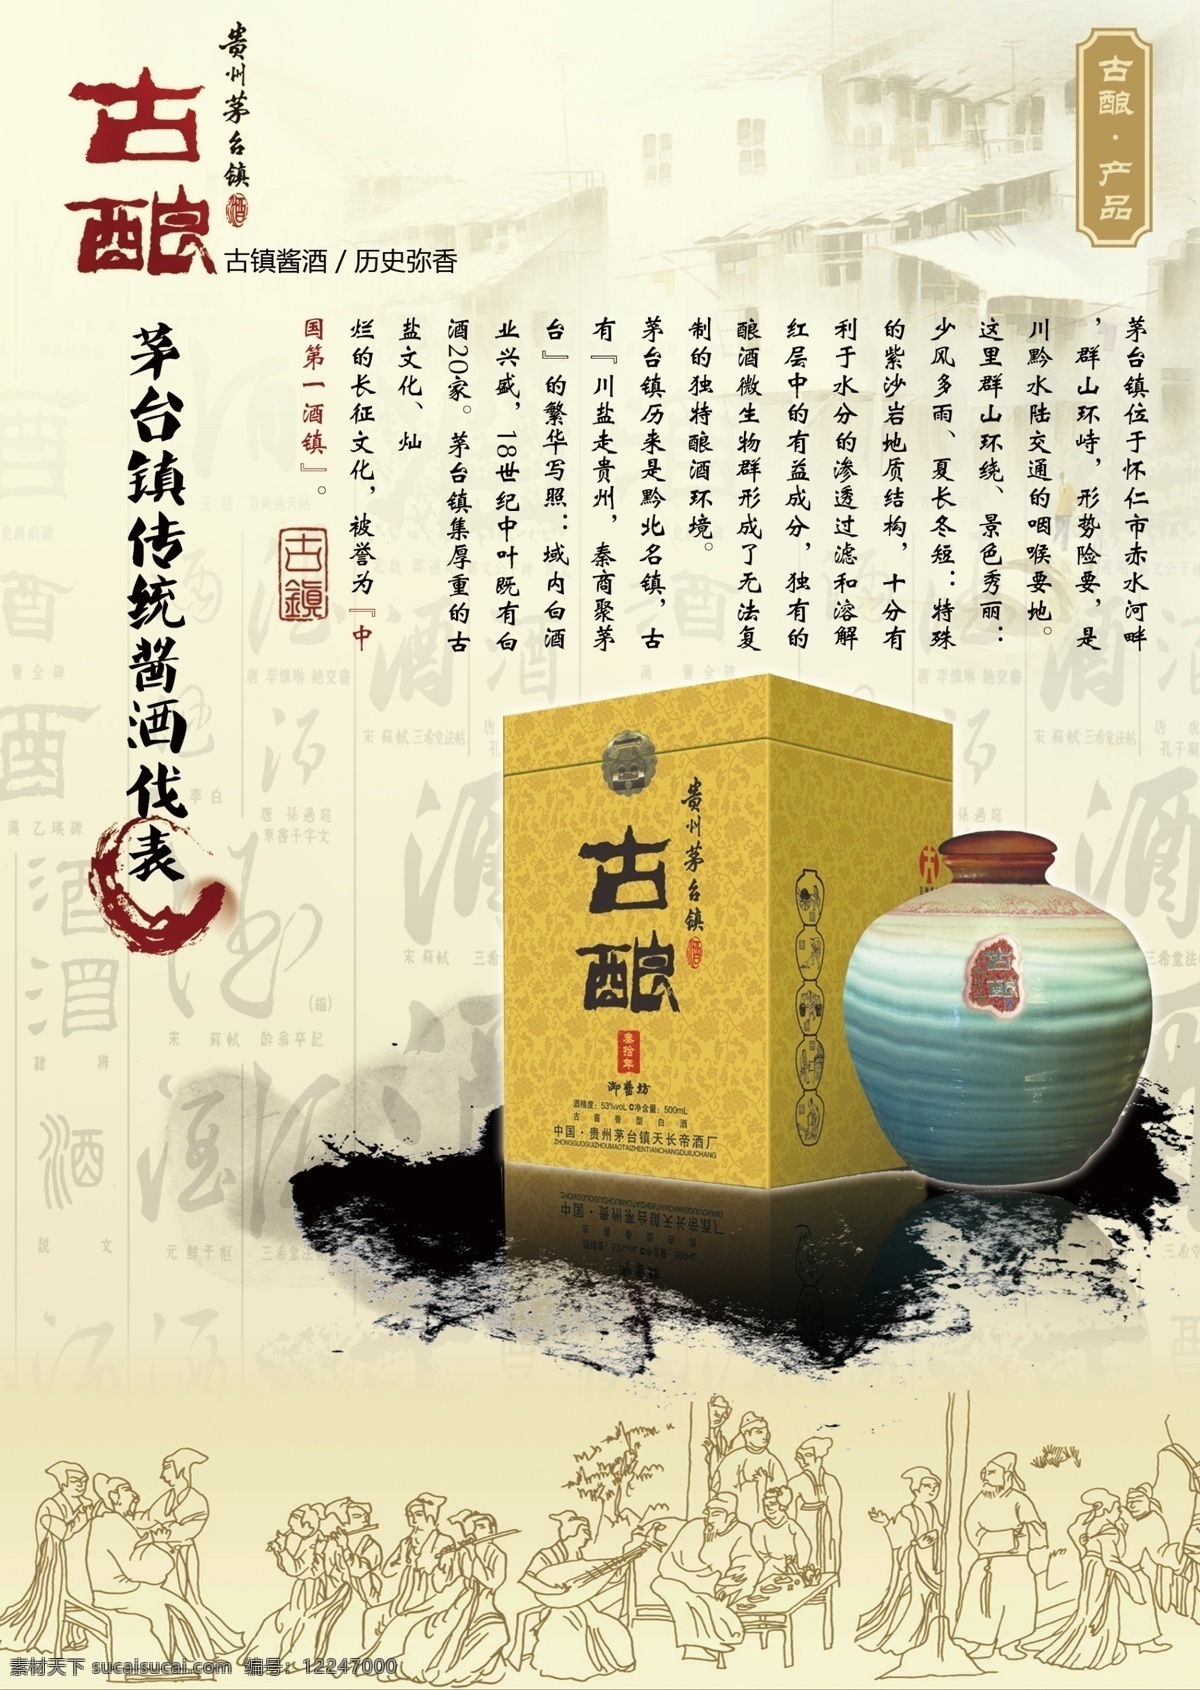 古酿酒 古酿 白酒 酒 酒文化 中国风 广告设计模板 源文件